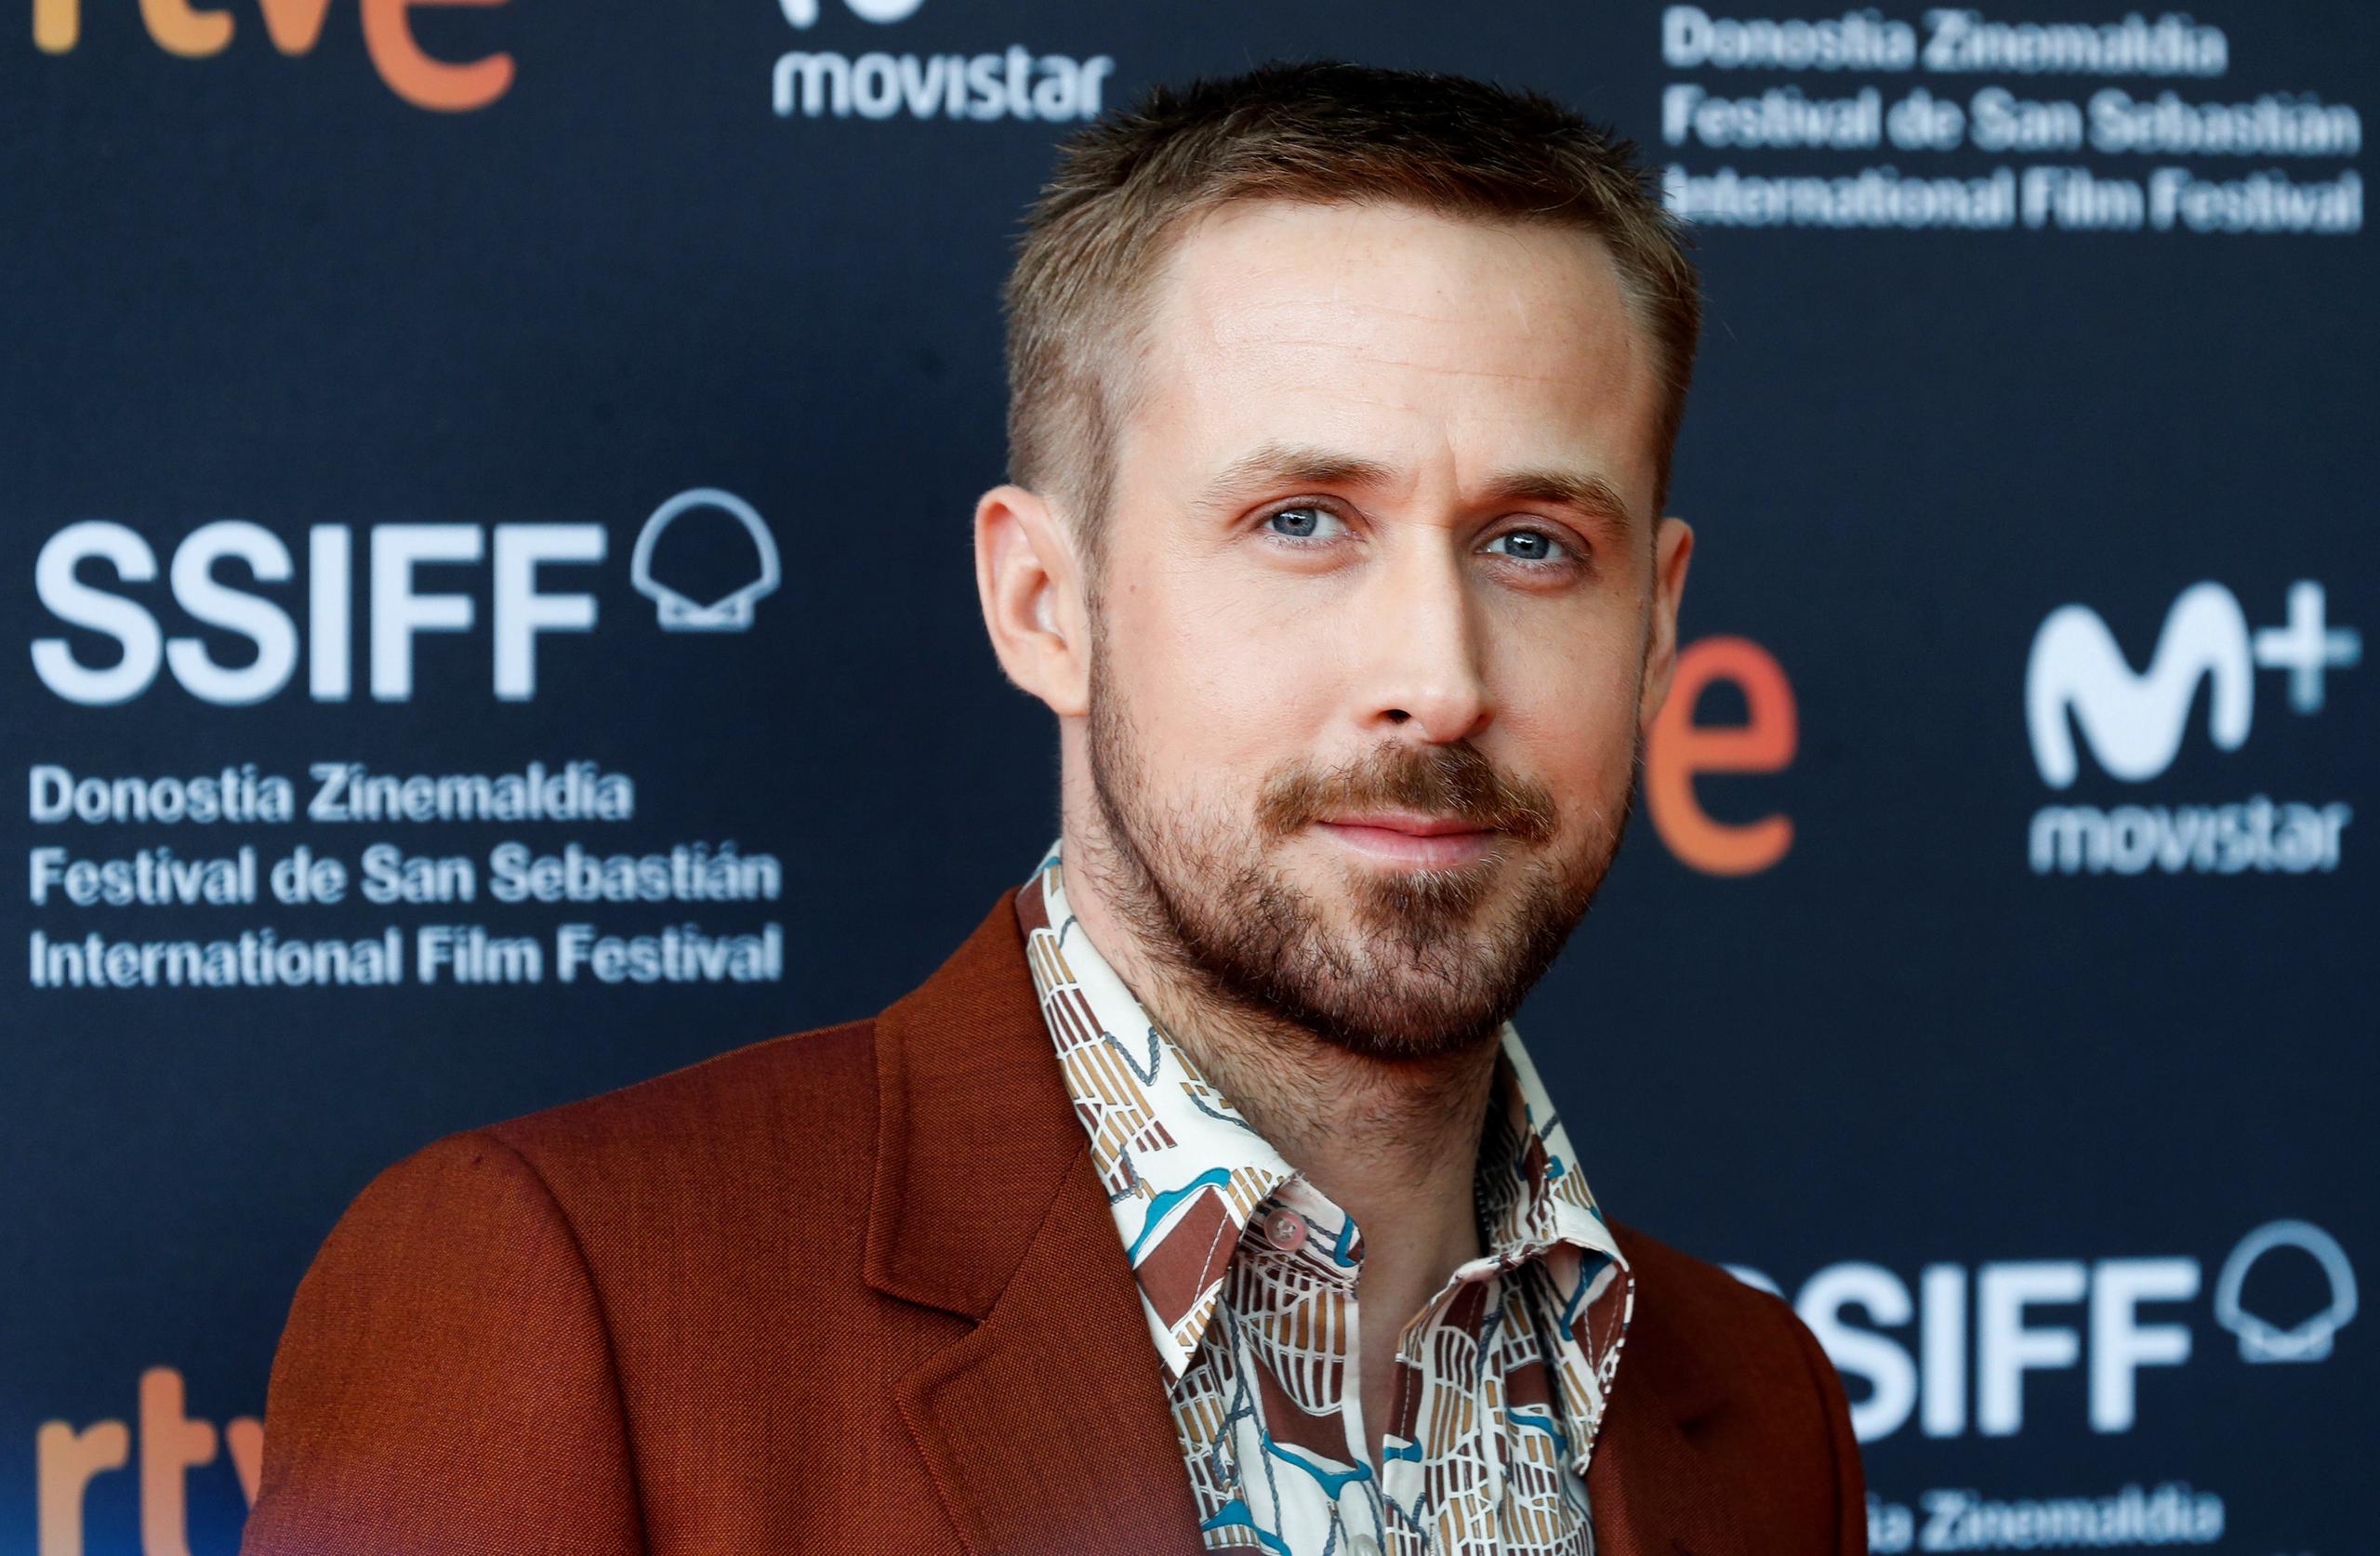 El actor canadiense Ryan Gosling posa a su llegada a la presentación de la película "First man", en la sección Perlas de la 66 edición del Festival Internacional de Cine de San Sebastián